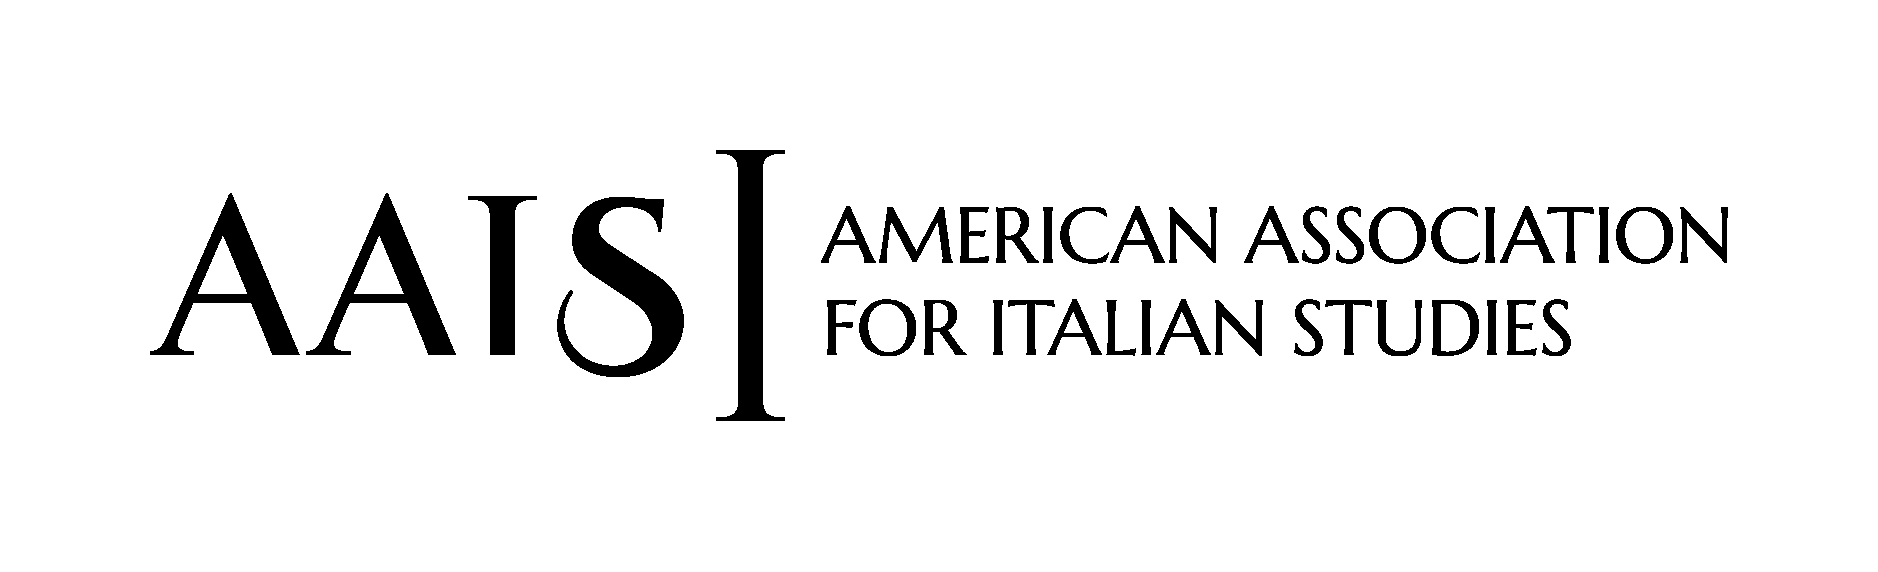 AAIS logo